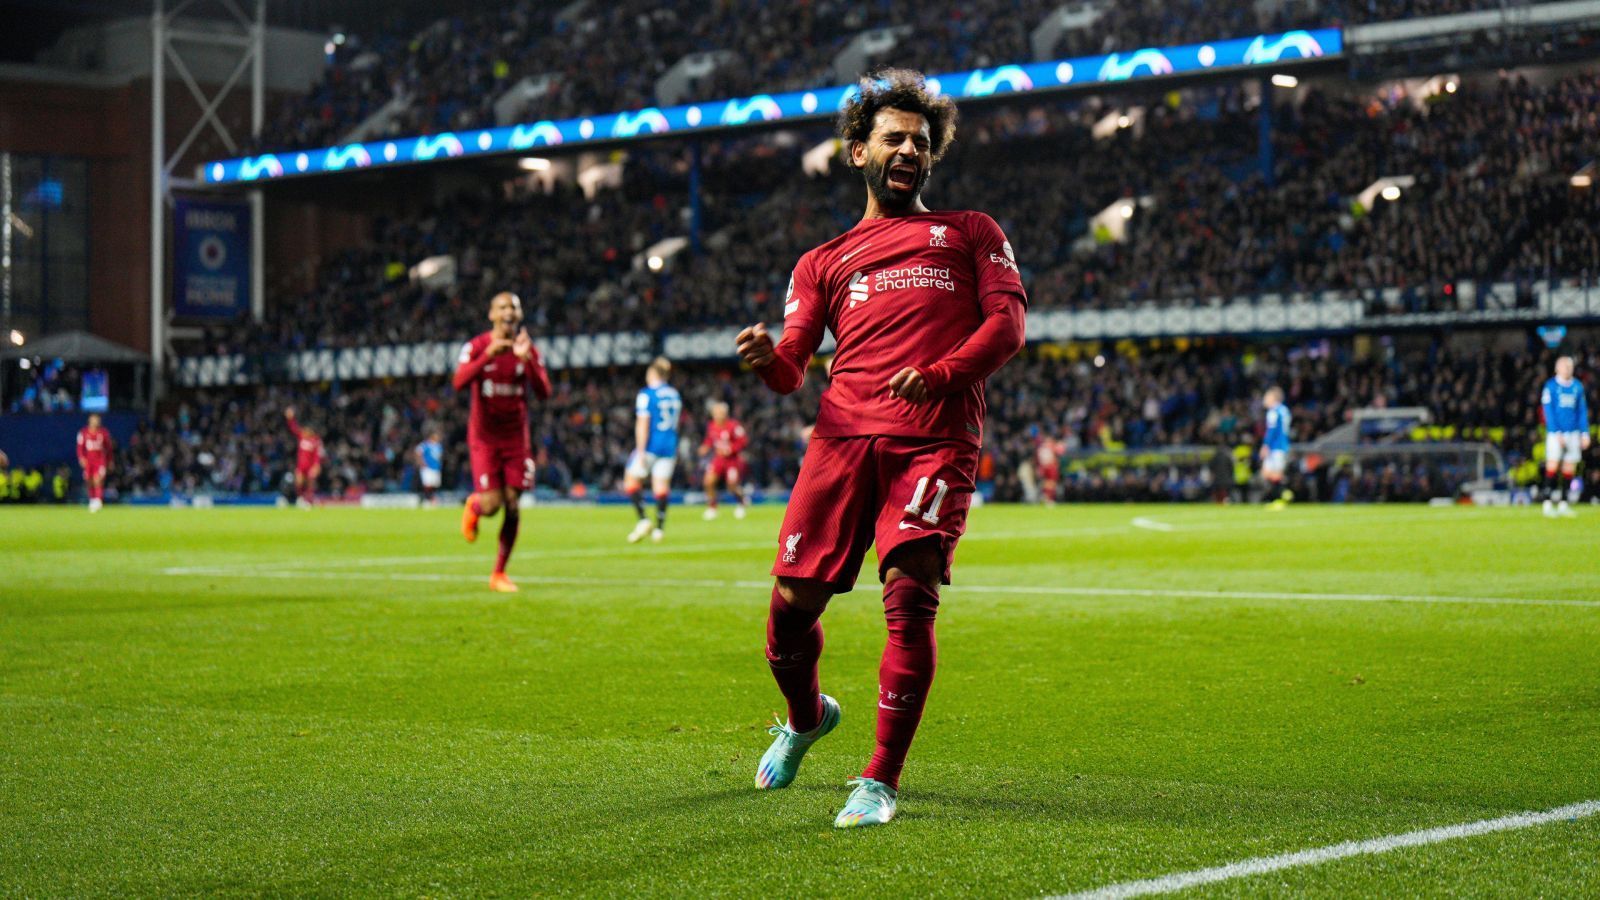 <strong>Nur sechs Minuten: Mo Salah erzielt schnellsten Hattrick der CL</strong><br>Mit 7:1 gewann der FC Liverpool 2022 bei den Glasgow Rangers. Überragender Mann war Mohamed Salah. Der Ägypter brauchte nur sechs Minuten und zwölf Sekunden für seinen Dreierpack, das ist neuer Rekord in der Champions League. Zudem benötigte er nur neun Ballaktionen für den Hattrick, ebenfalls Bestwert. (Quelle: twitter.com/OptaJoe)